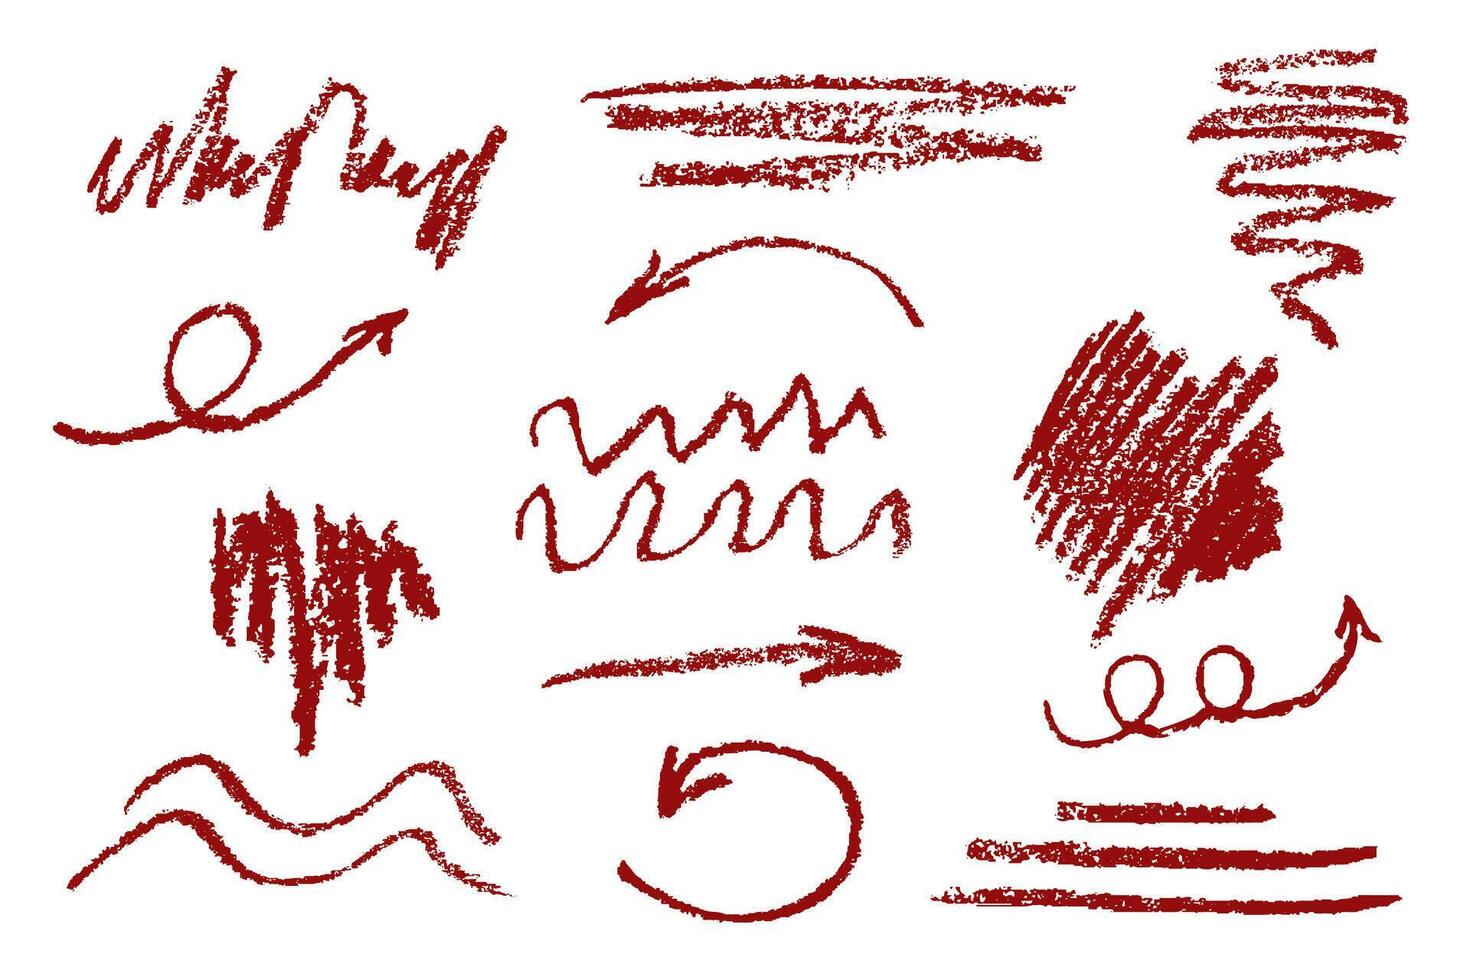 charbon crayon avec ondulé horizontal lignes, gribouillis, coups, points et spirales. chaotique motifs de traits.sketch éléments pour conception. vecteur